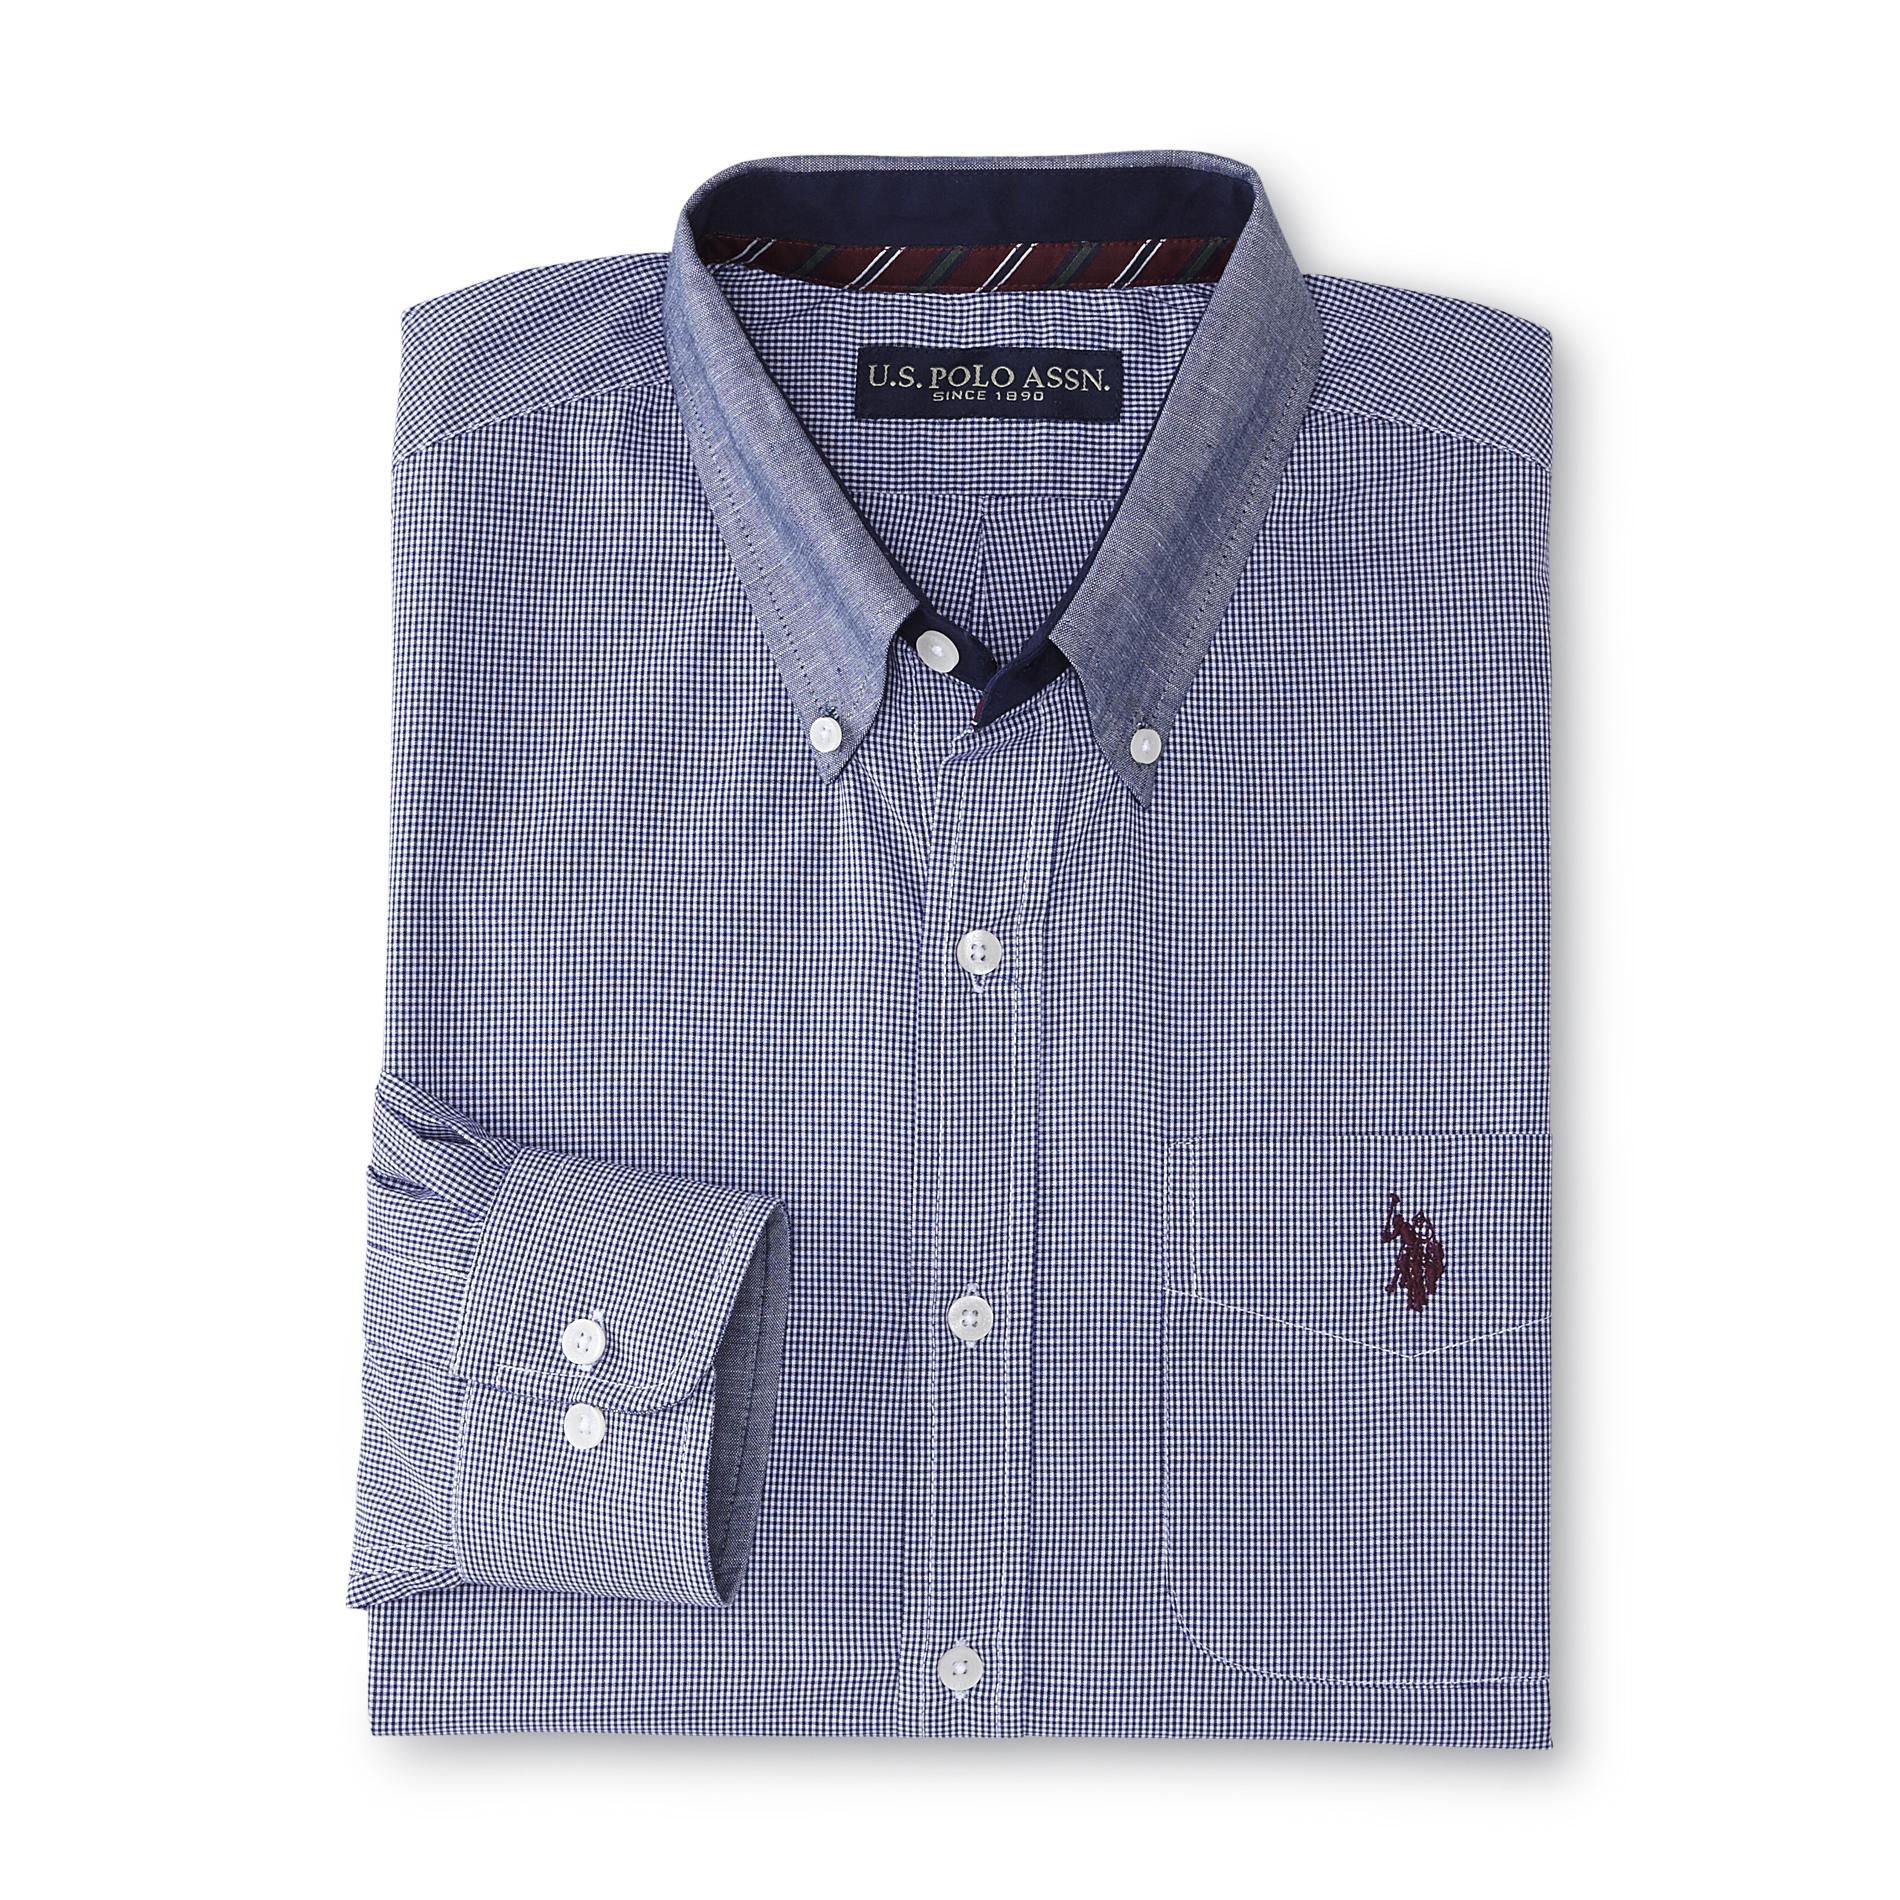 U.S. Polo Assn. Men's Button-Front Shirt - Checkered